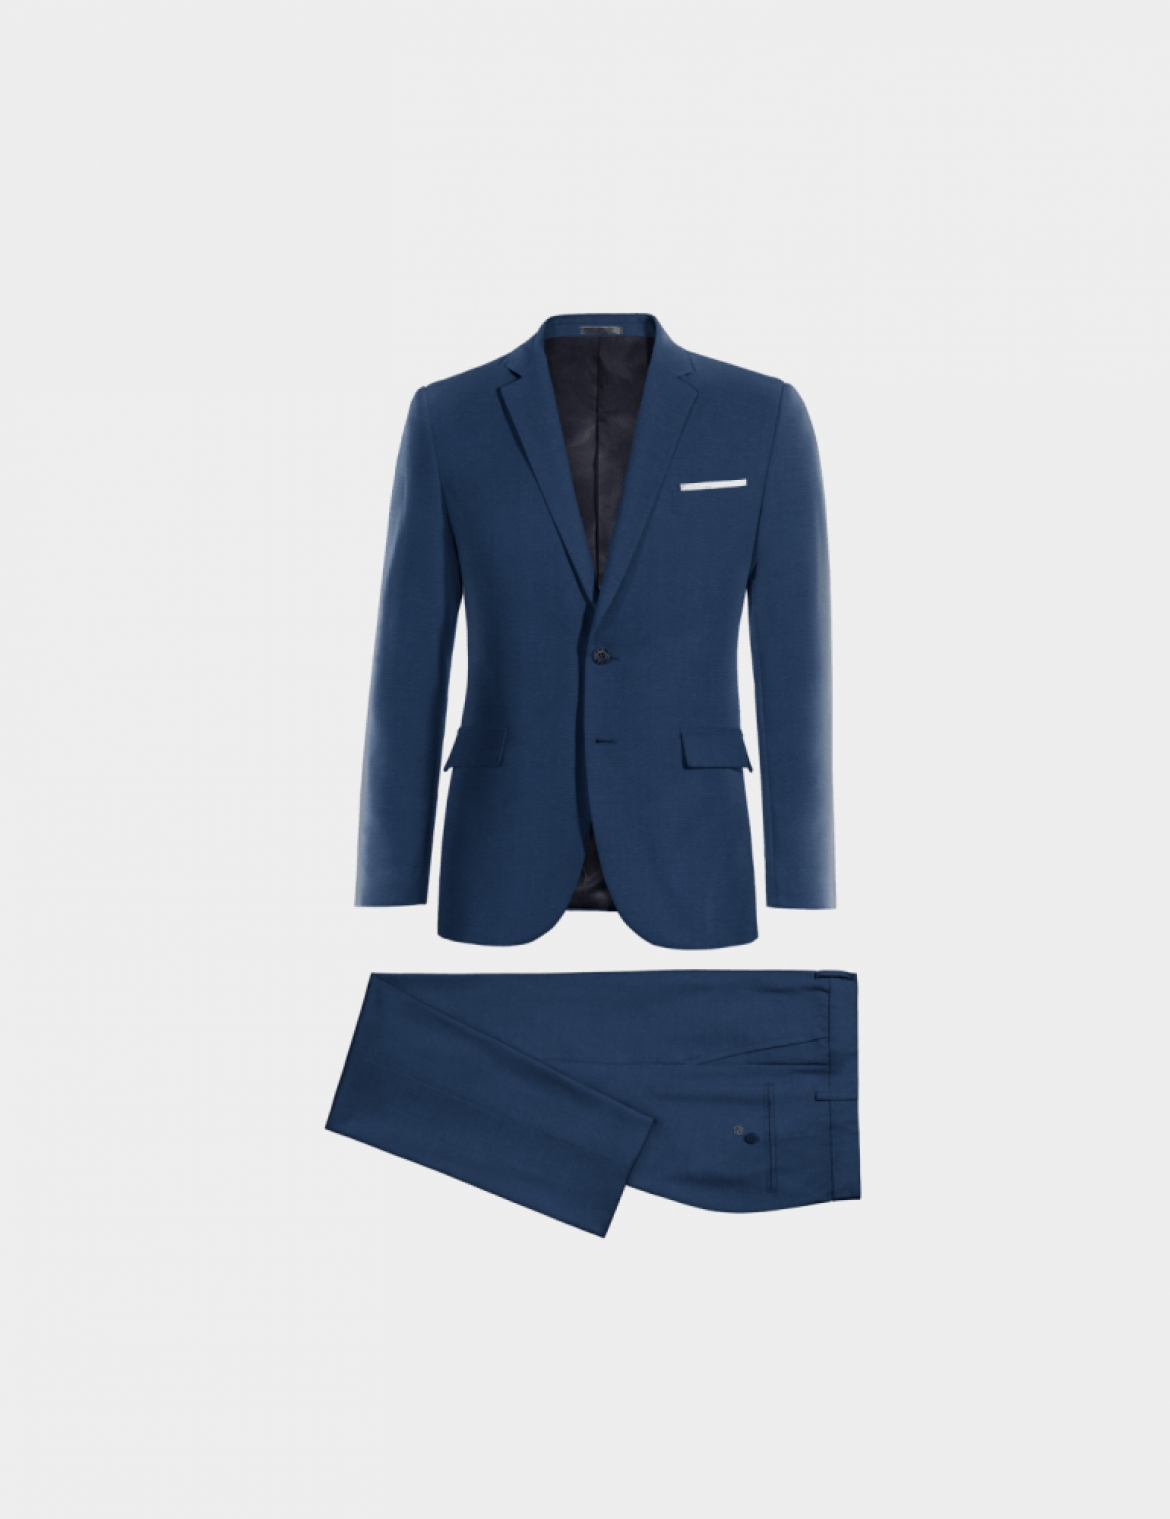 Custom suit - Blue Suit